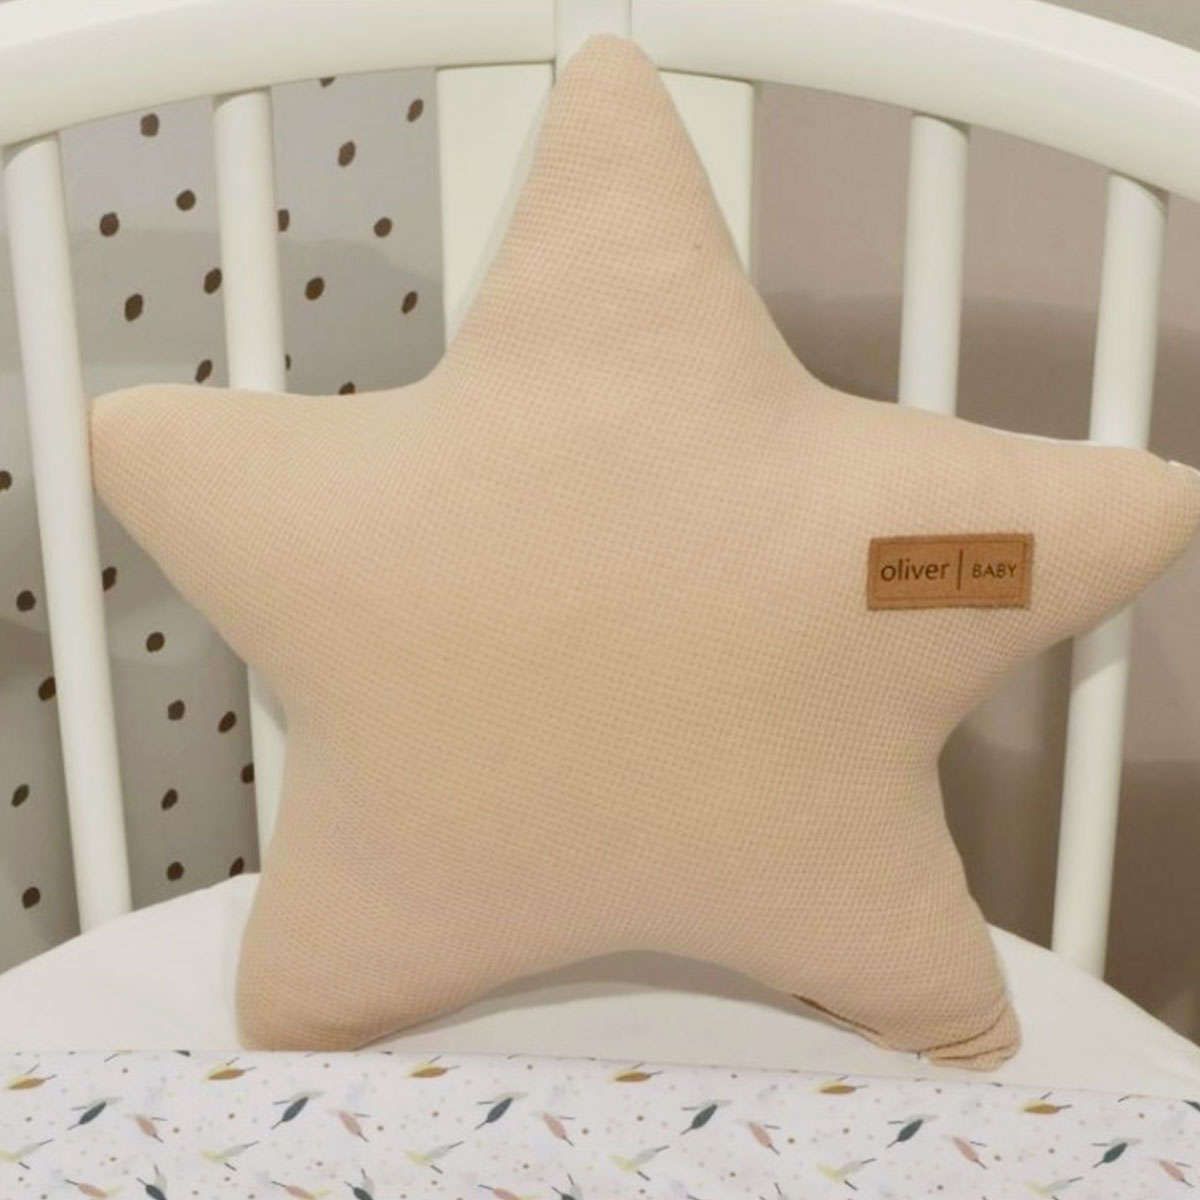 Διακοσμητικό μαξιλάρι Αστέρι des.404 beige baby oliver